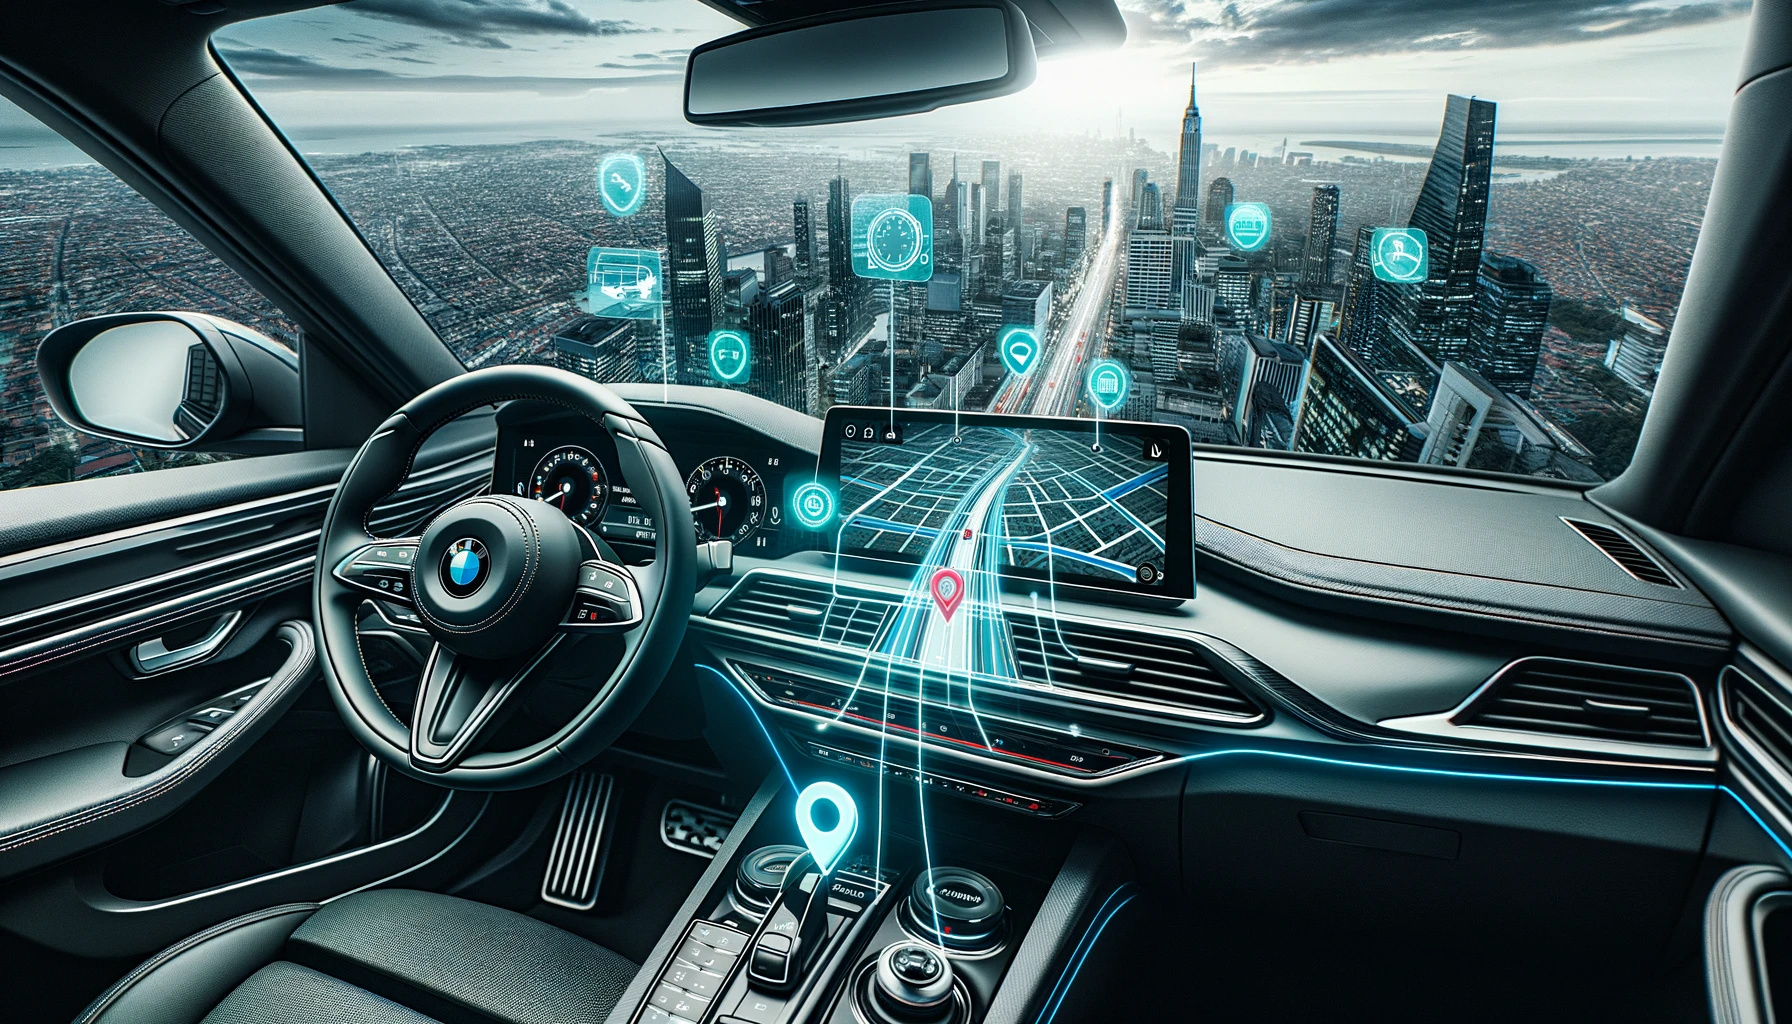 Photo im 3:2 Format eines modernen Autos mit einem sichtbar integrierten GPS-Tracker im Armaturenbrett und grafischen Highlights, die die Funktionsweise zeigen.